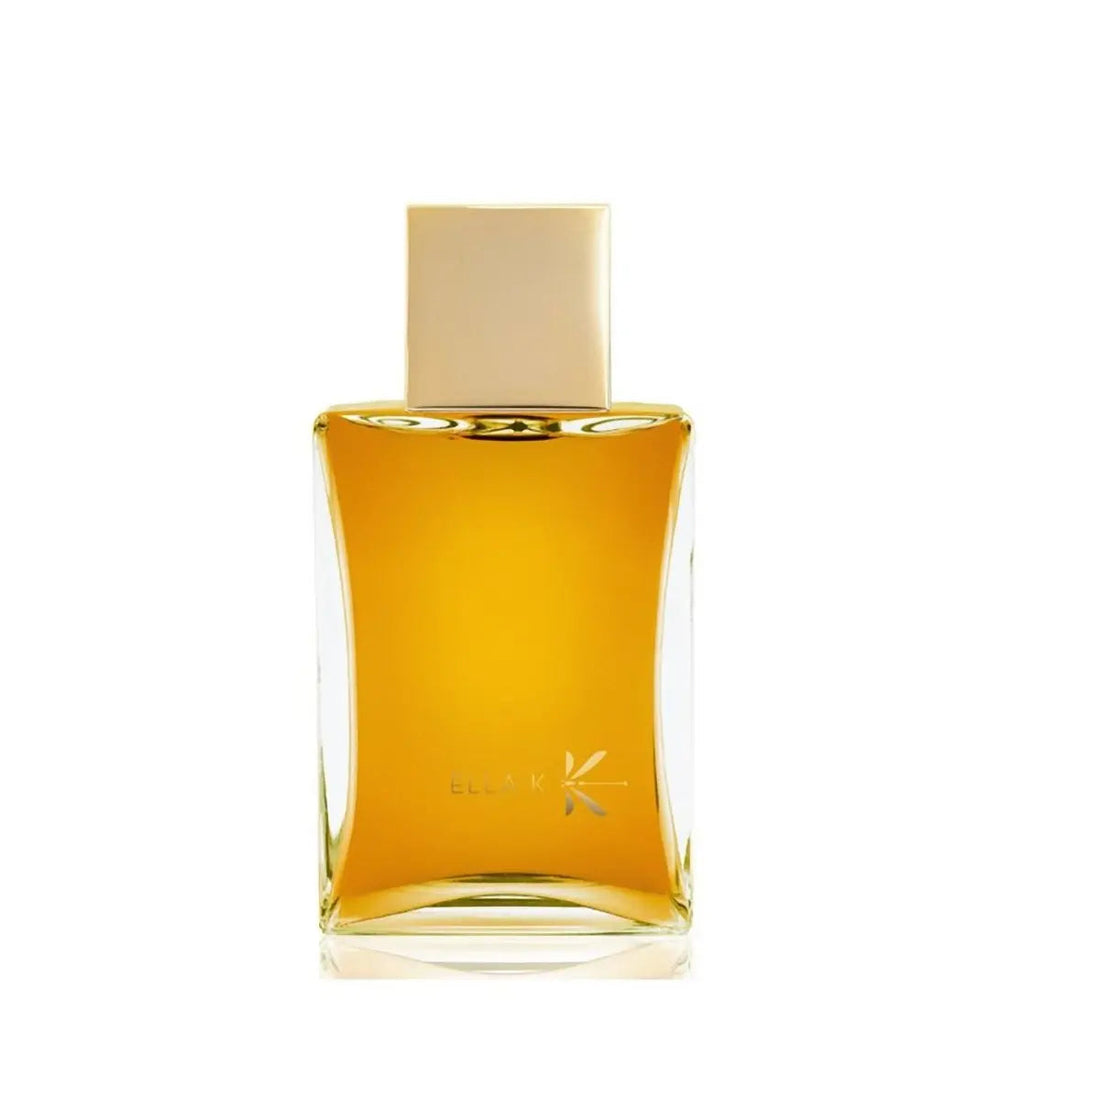 Ella k perfumes GHIBLI EDP - 100 ml